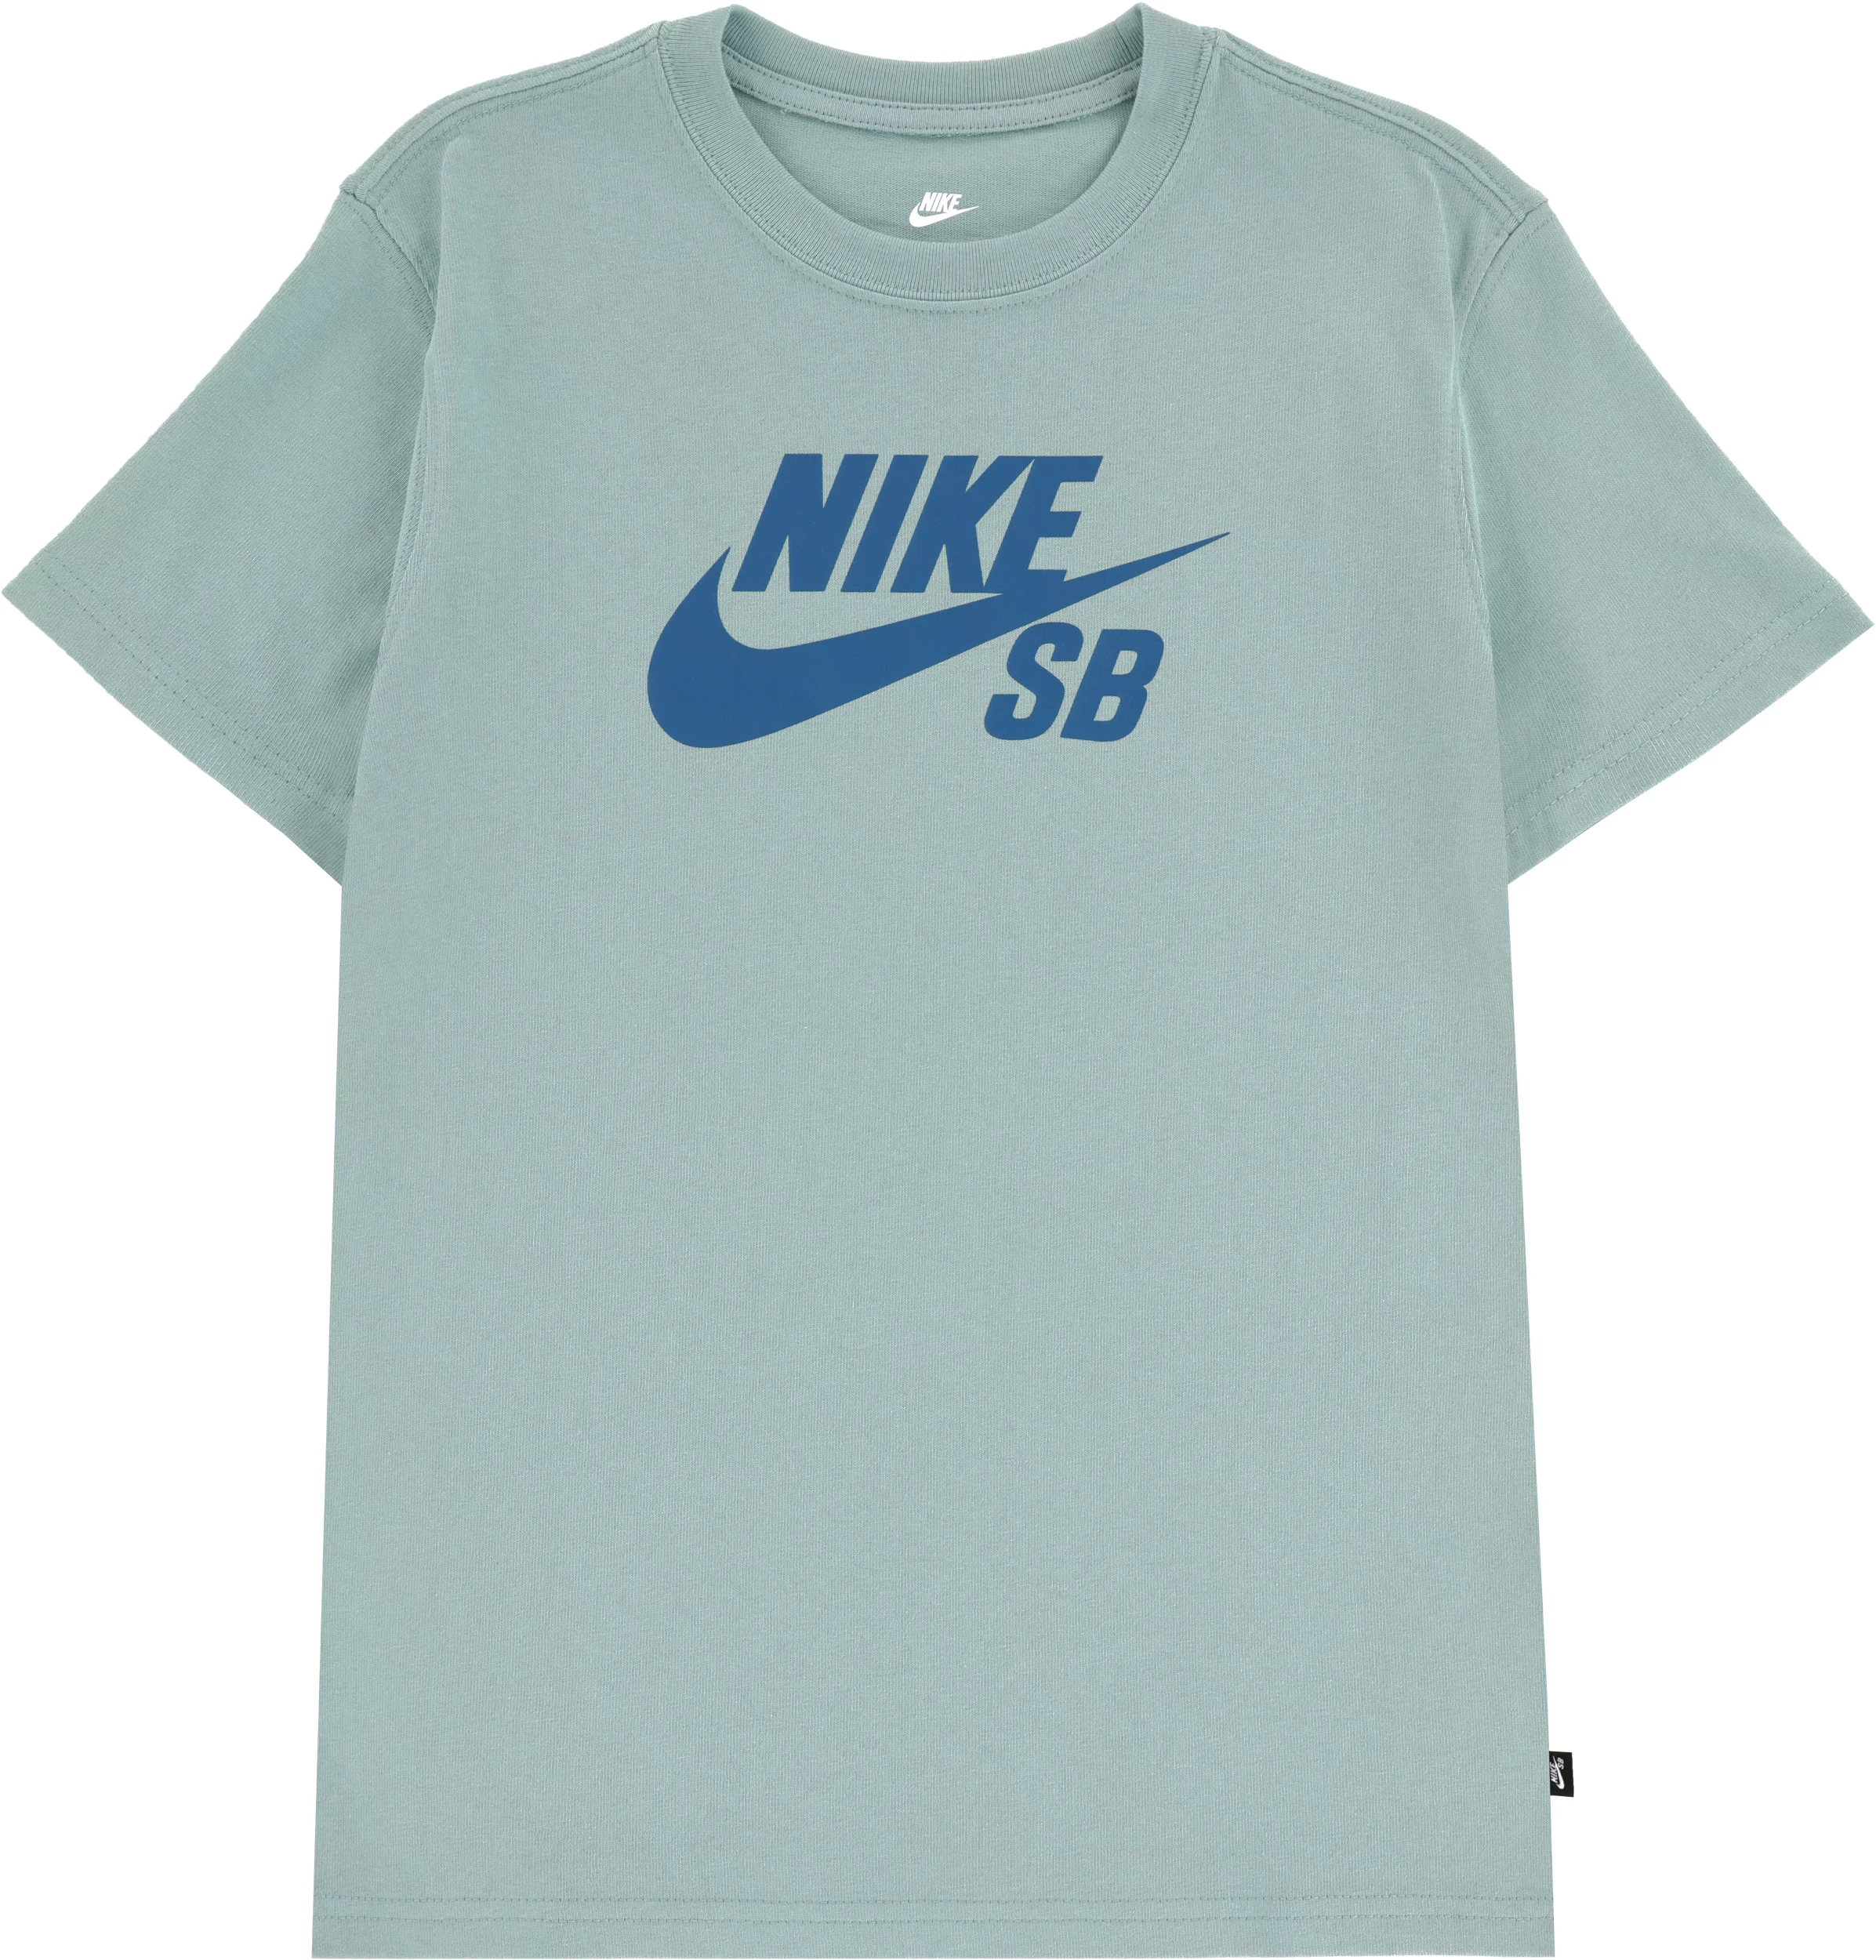 Nike SB Kids SB T-Shirt mineral | Tactics